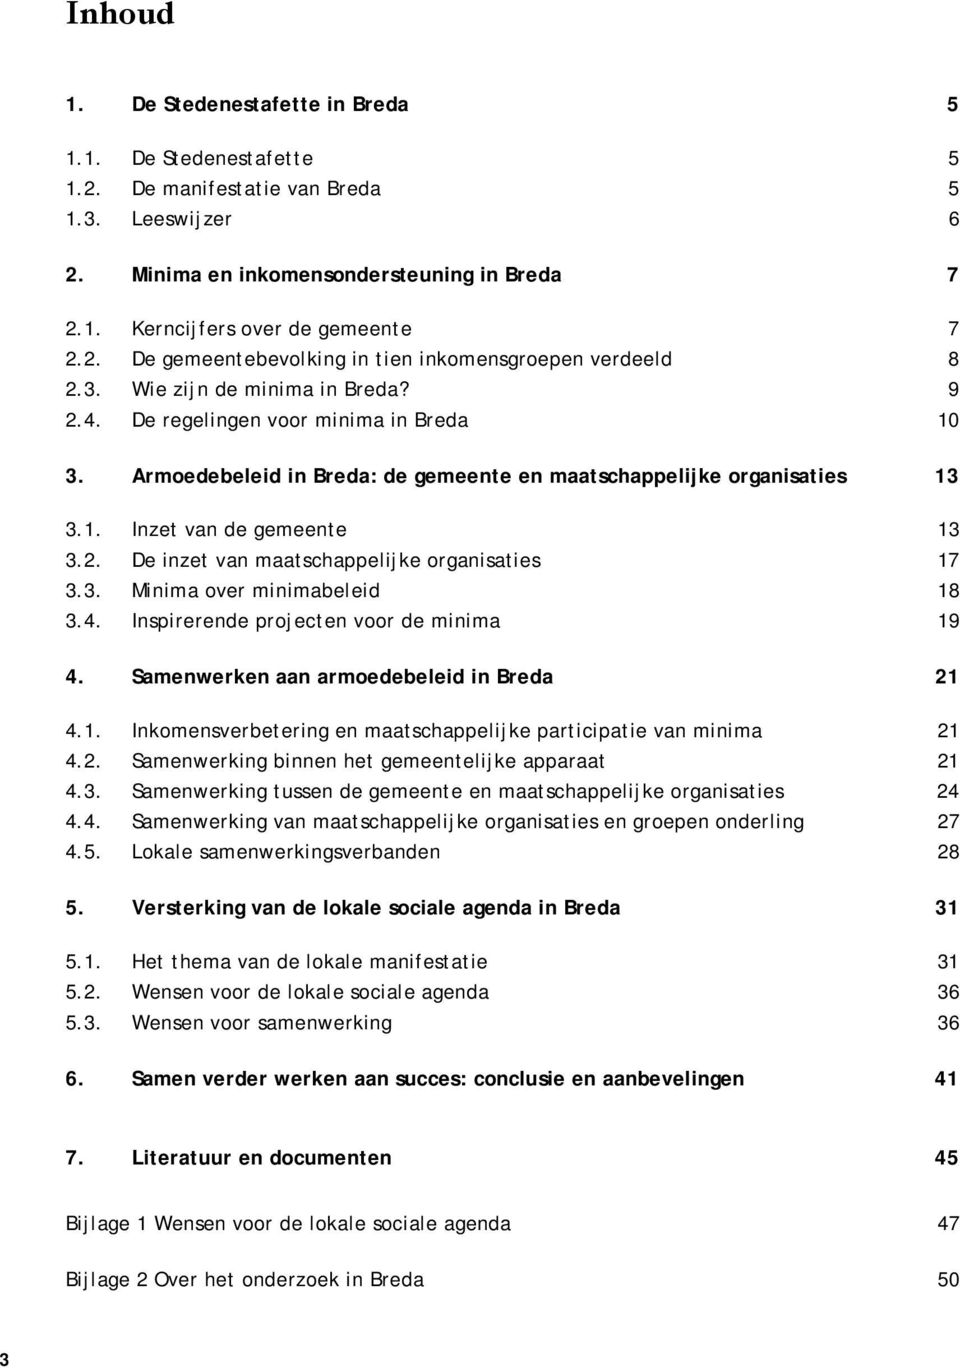 3. Minima over minimabeleid 8 3.4. Inspirerende projecten voor de minima 9 4. Samenwerken aan armoedebeleid in Breda 2 4.. Inkomensverbetering en maatschappelijke participatie van minima 2 4.2. Samenwerking binnen het gemeentelijke apparaat 2 4.